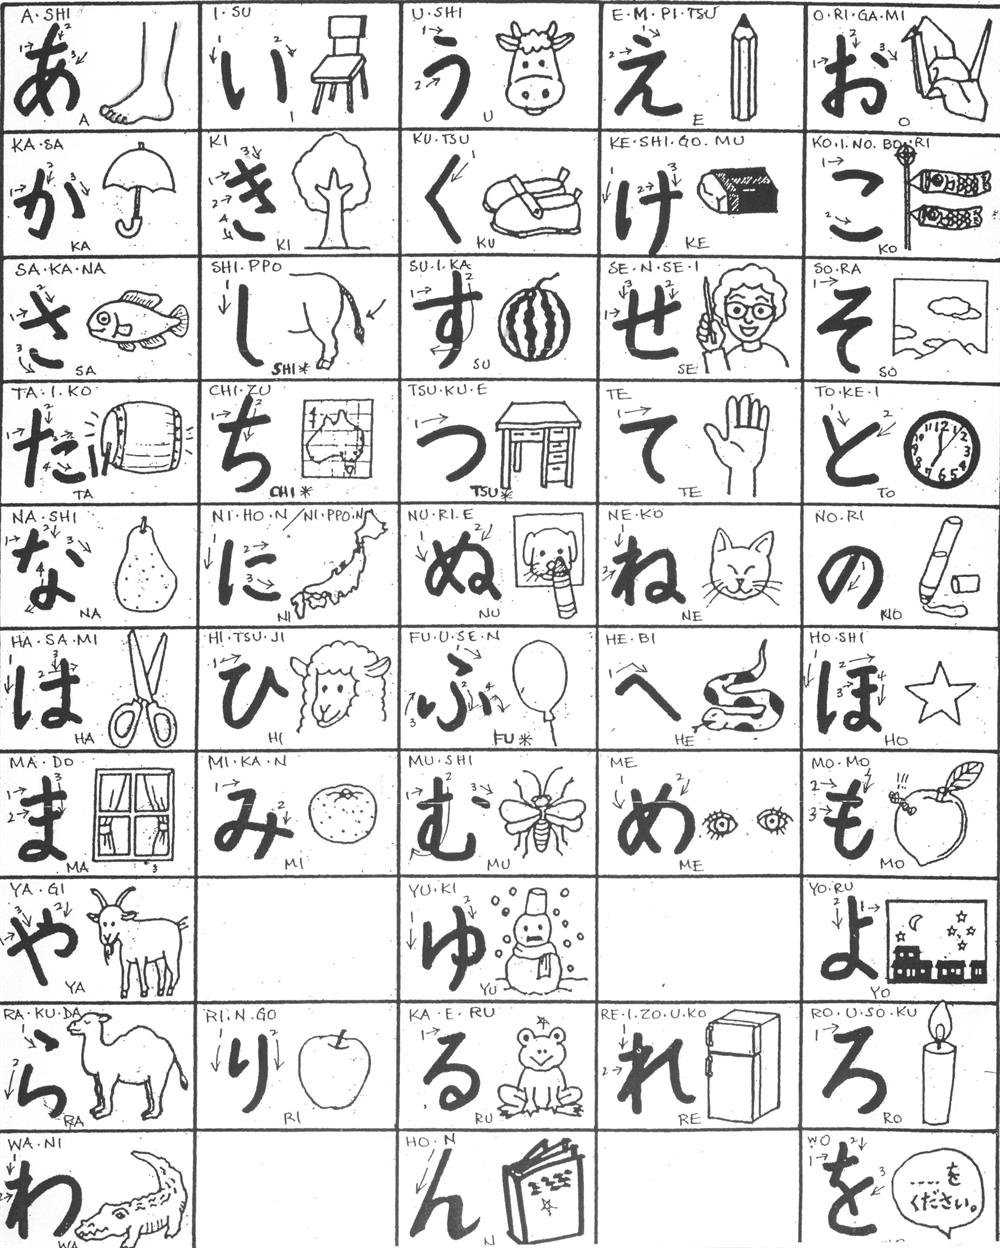 شکل ۷:‌برخی از عبارات و کلمات الفبای ژاپنی

